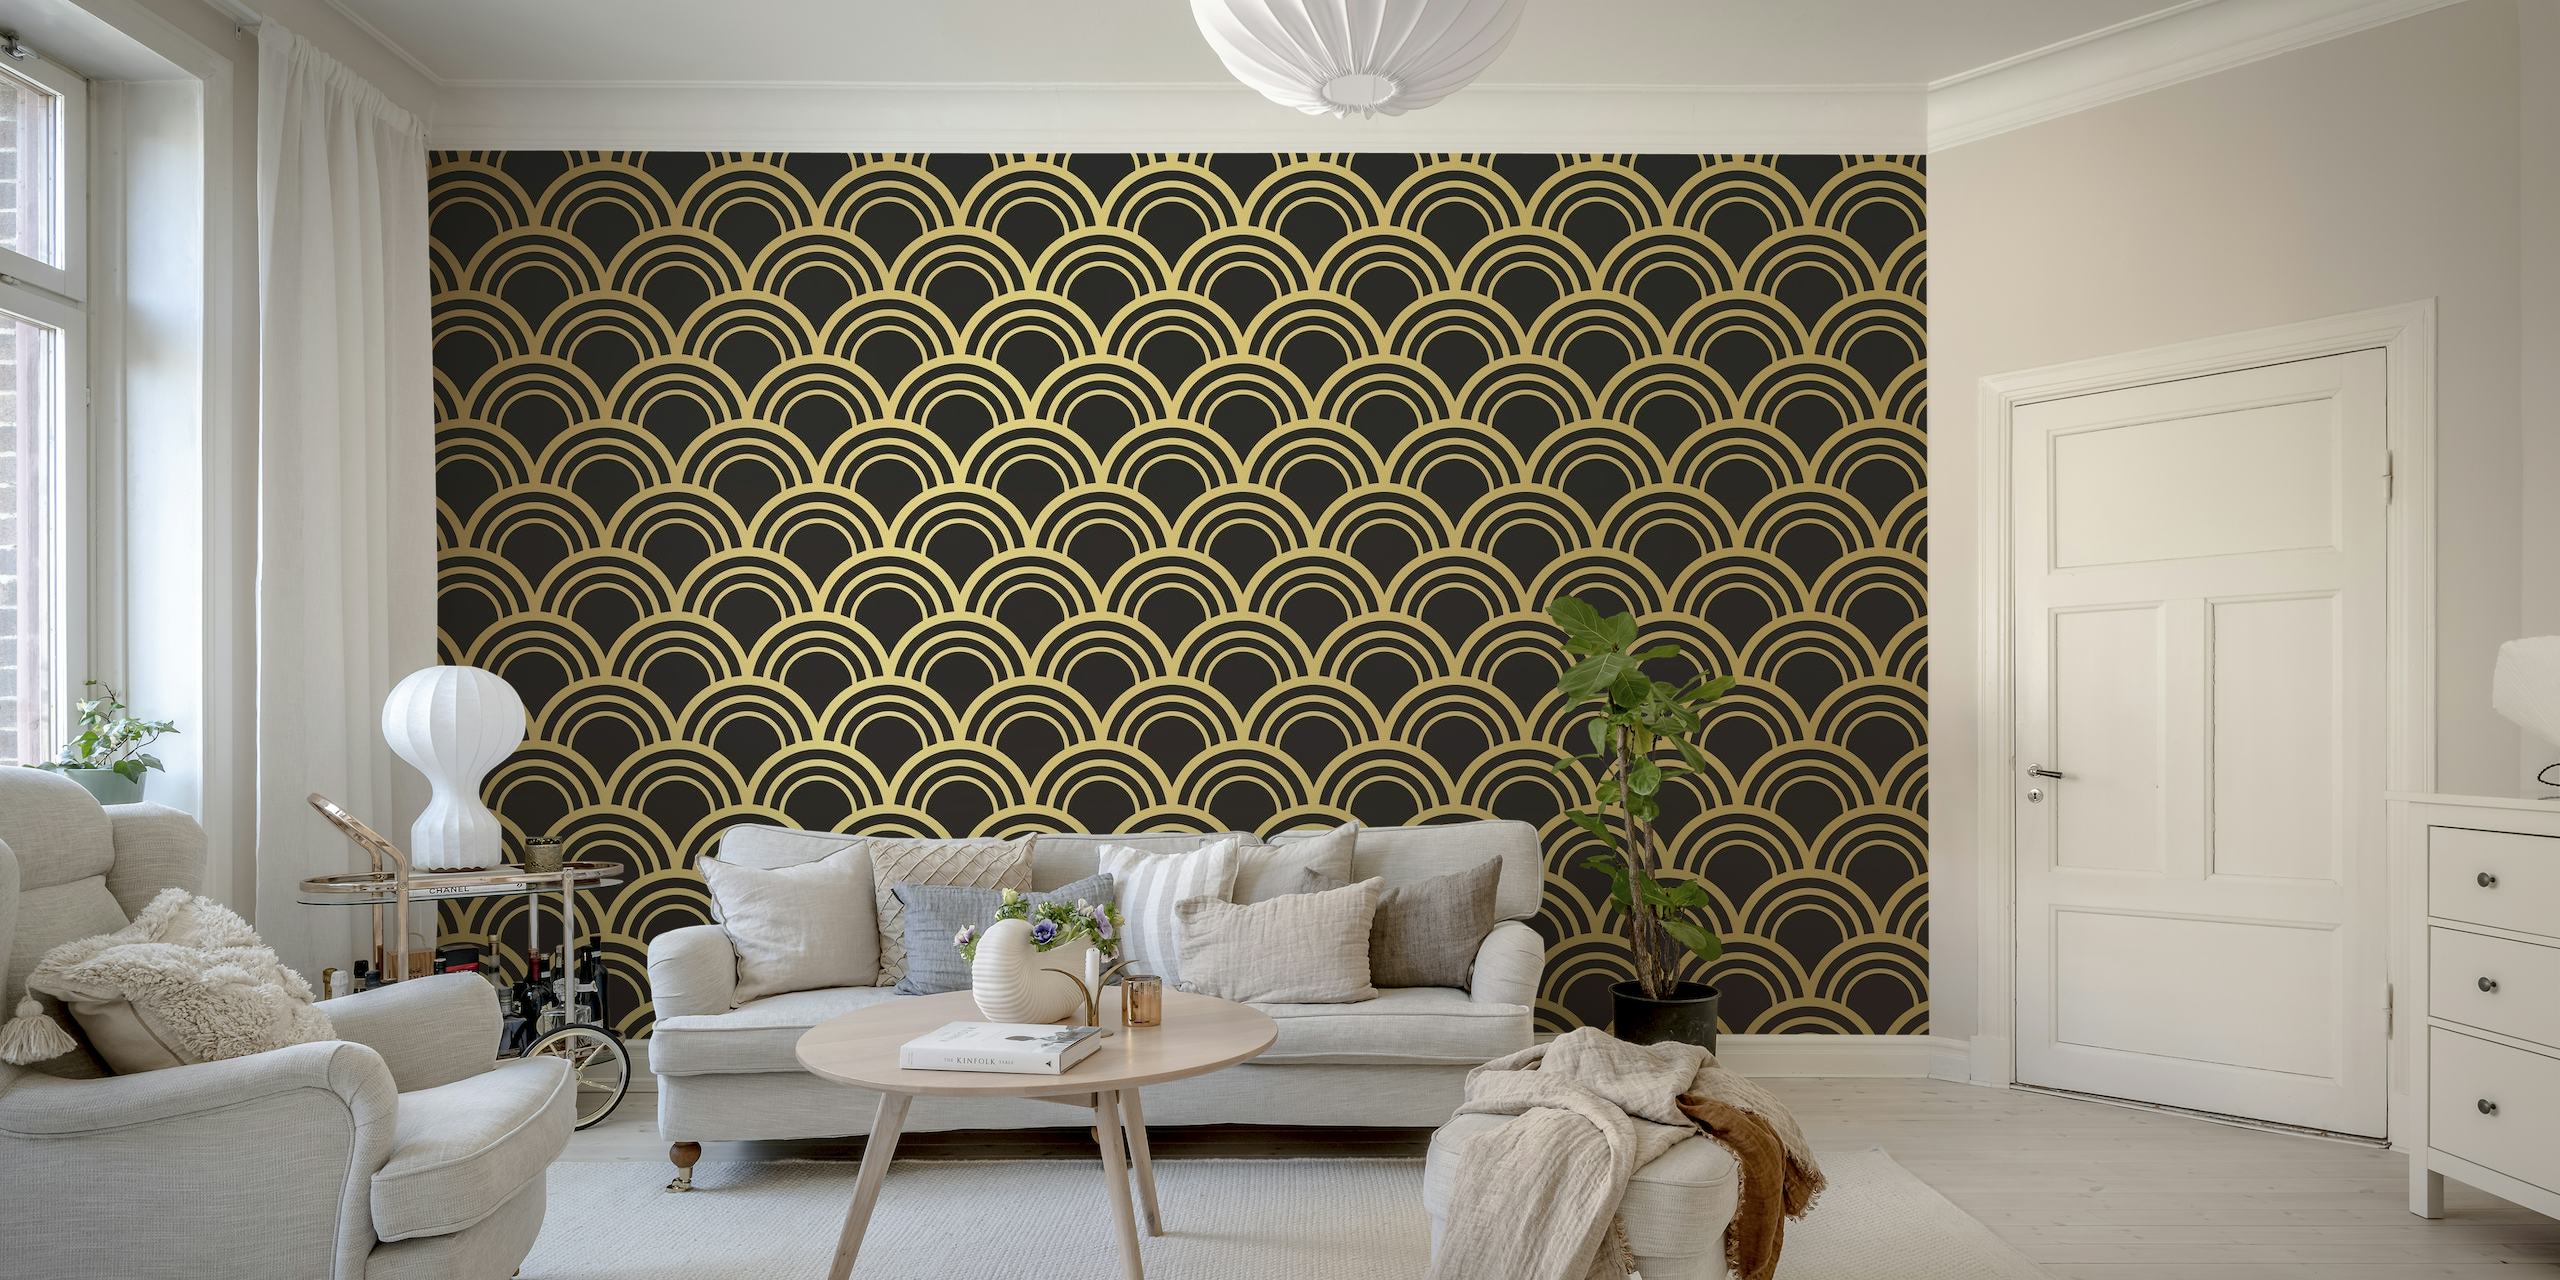 Elegante padrão geométrico dourado sobre um fundo escuro representando um mural de parede estilo Art Déco